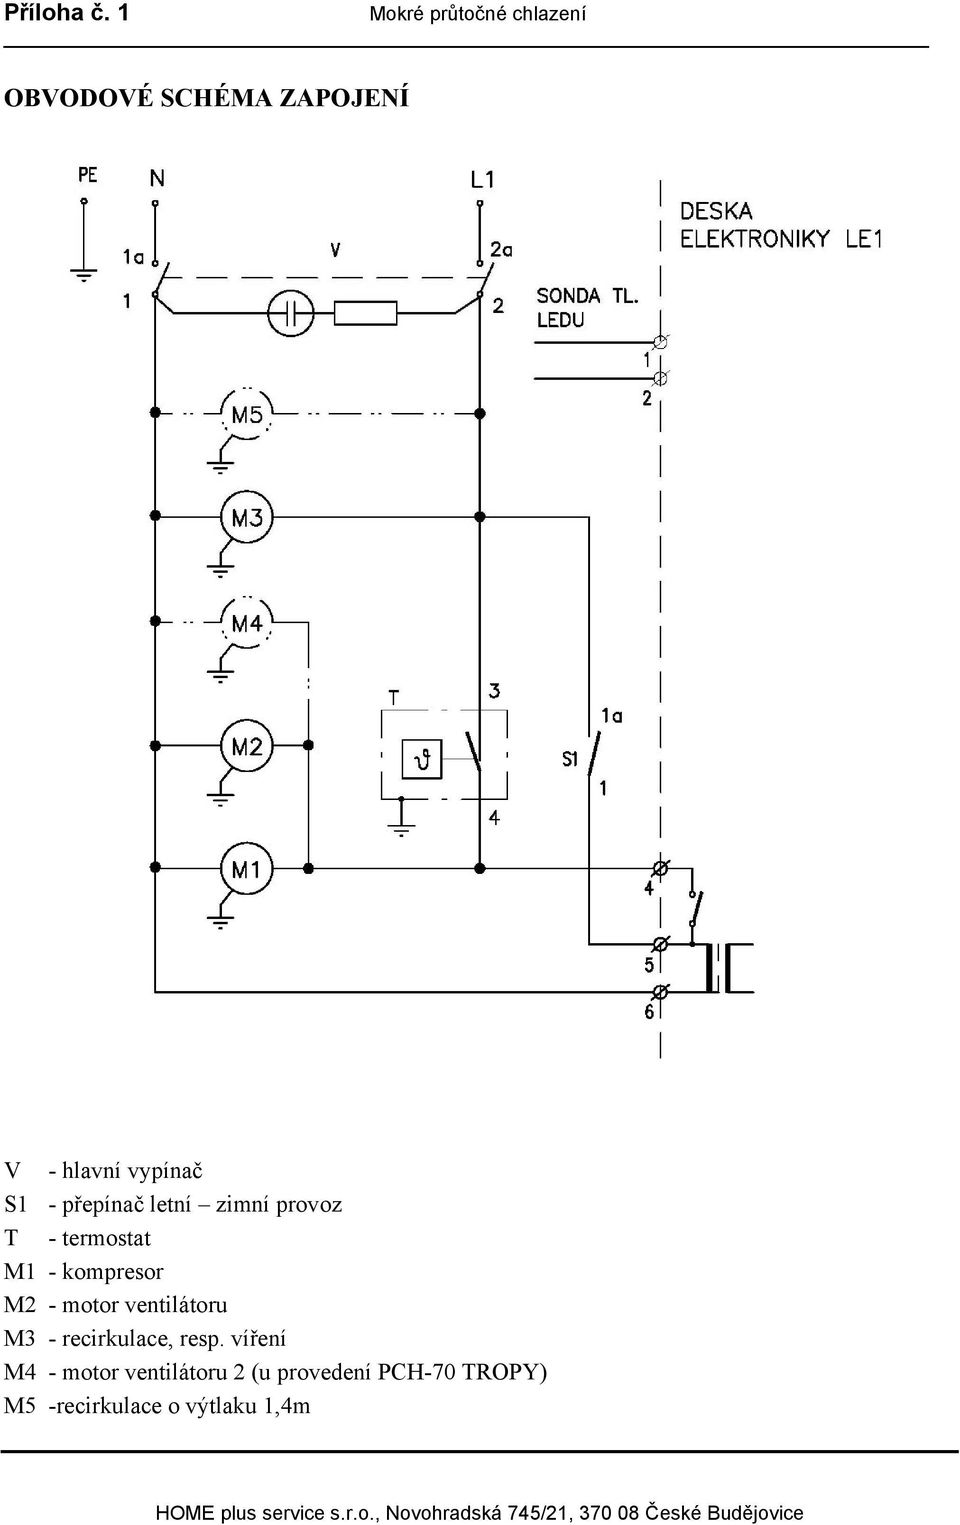 S1 - přepínač letní zimní provoz T - termostat M1 - kompresor M2 -